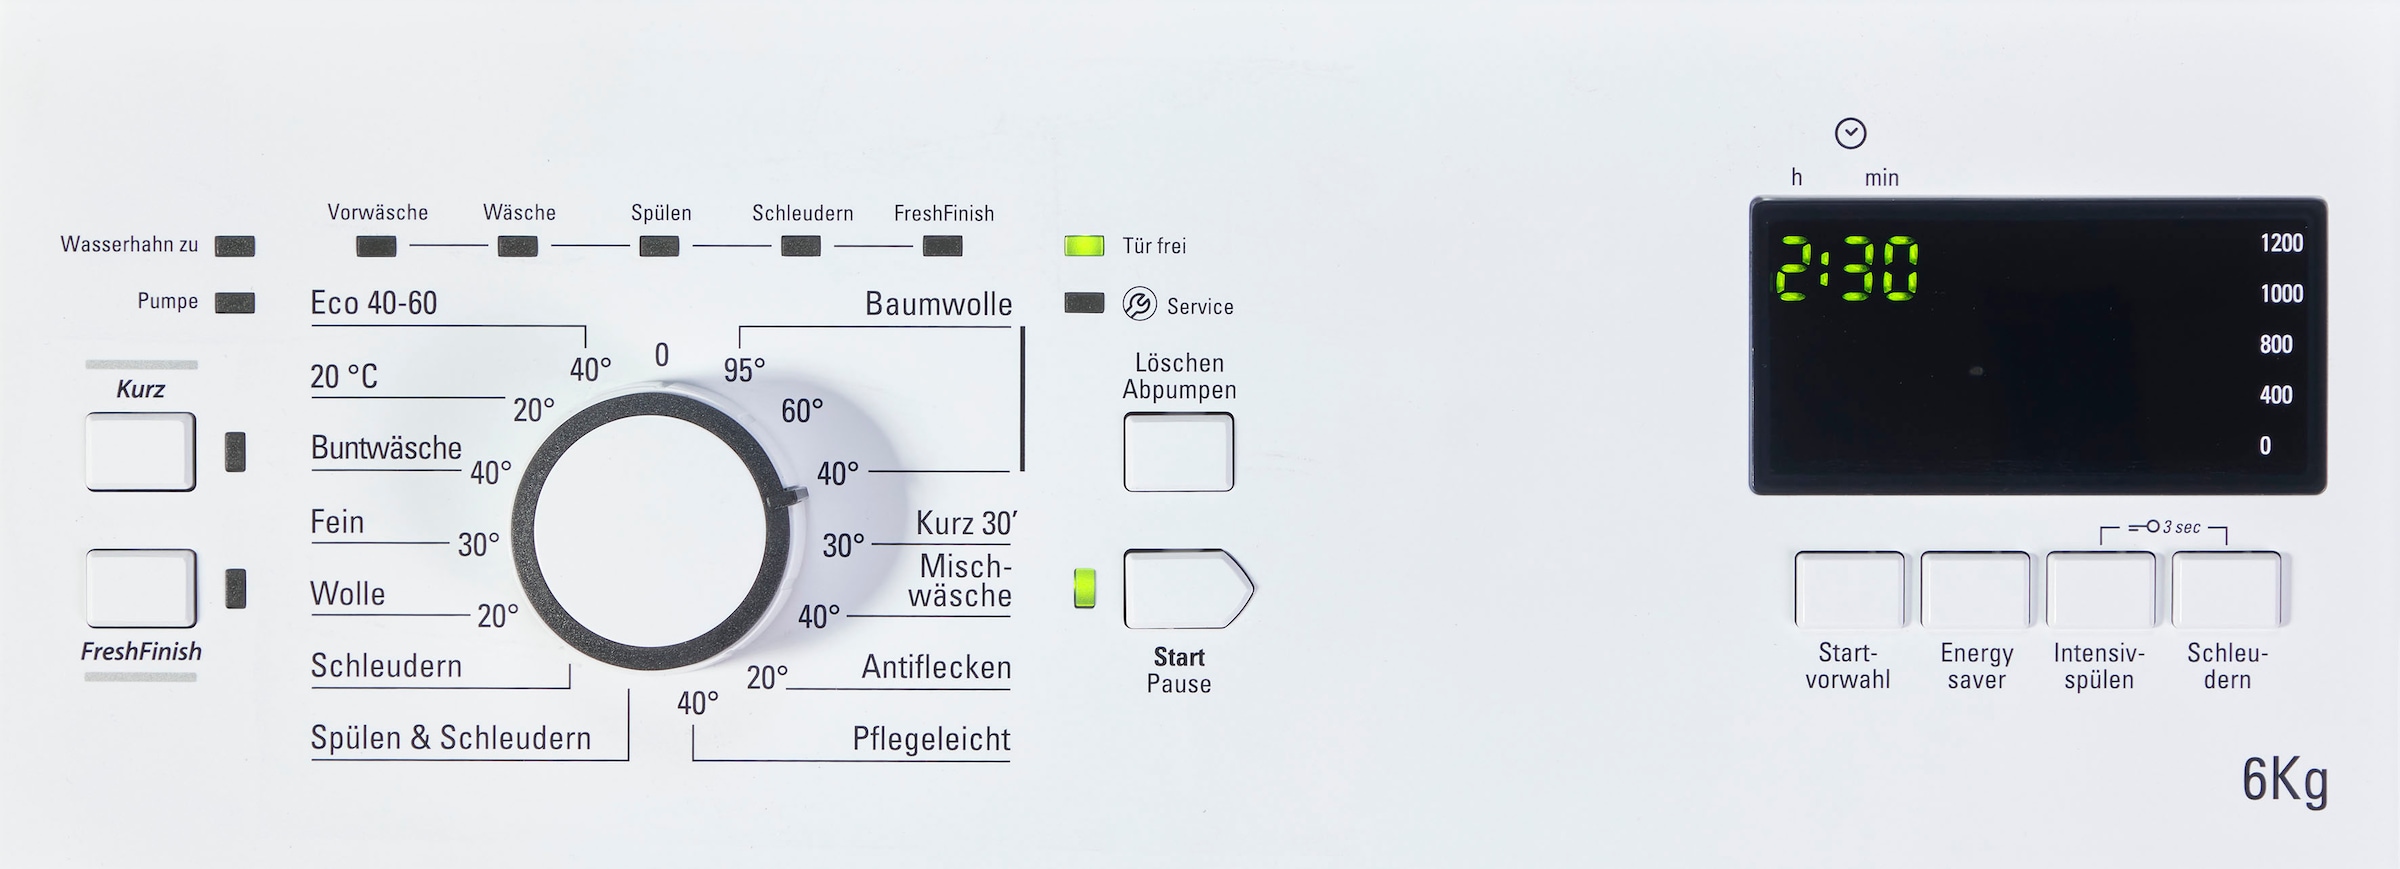 BAUKNECHT Waschmaschine Toplader 1200 Eco Eco 6 jetzt bei bestellen U/min Smart kg, 12C, OTTO »WAT 12C«, WAT Smart